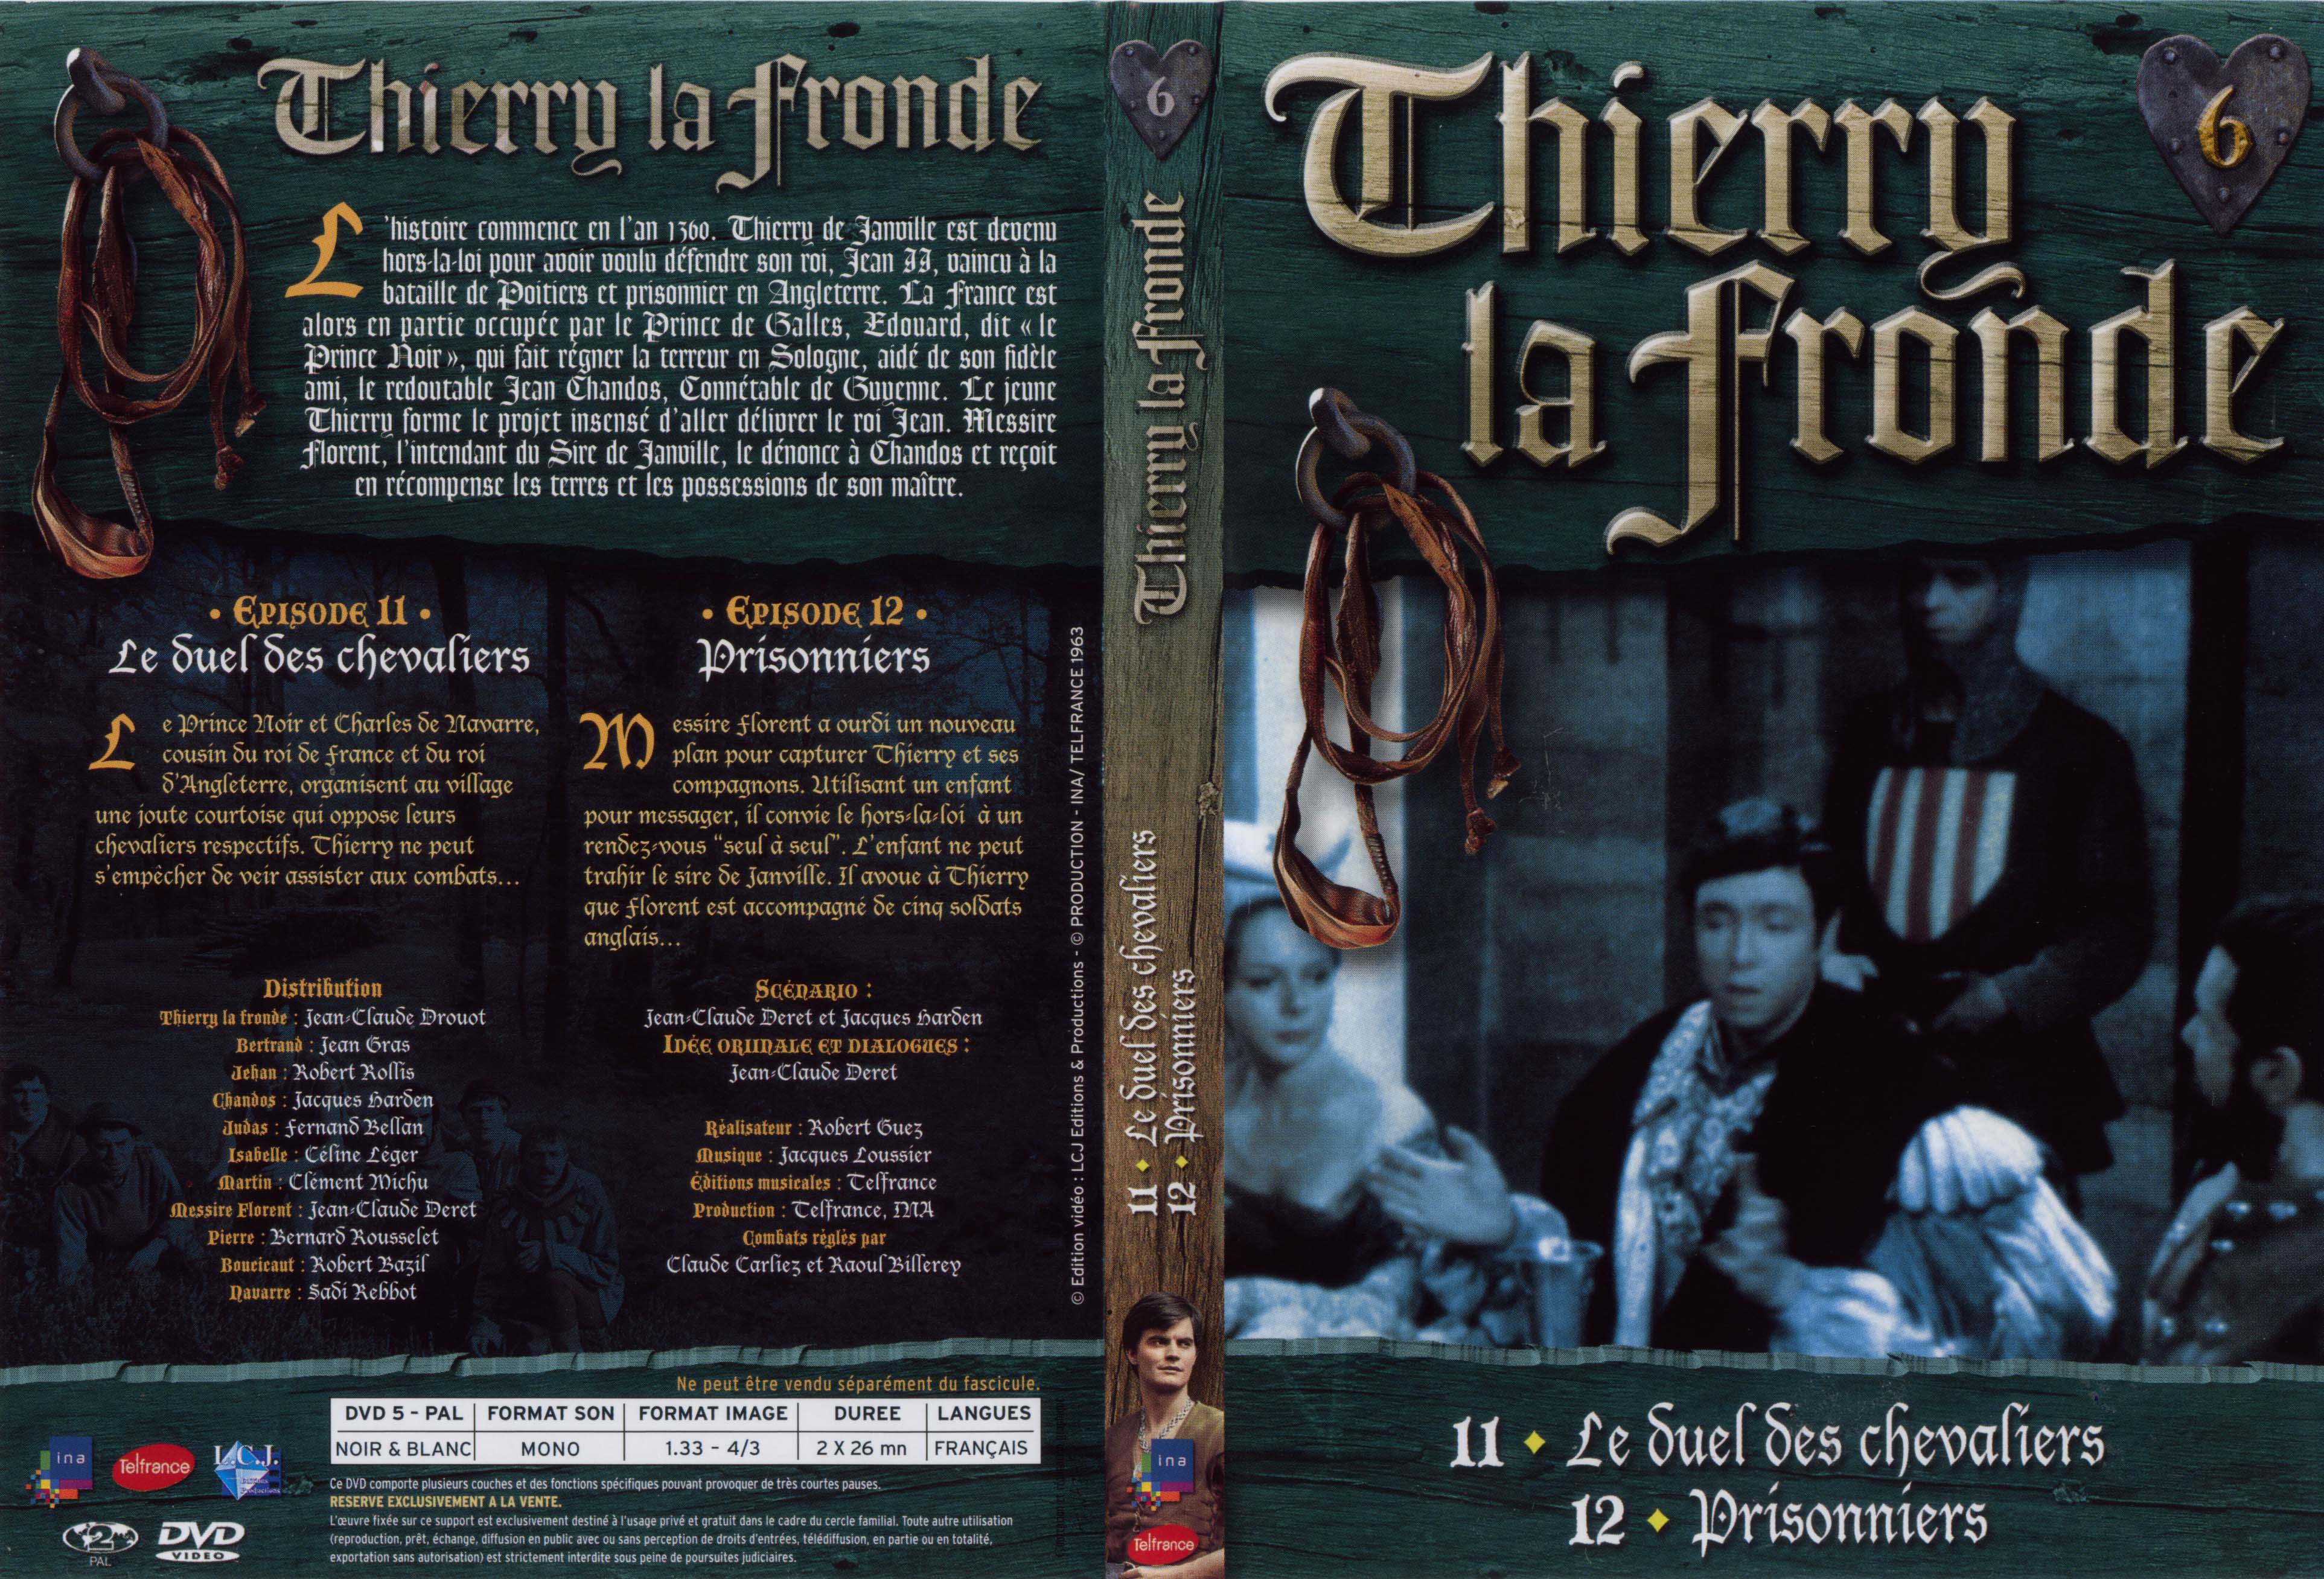 Jaquette DVD Thierry la Fronde vol 06